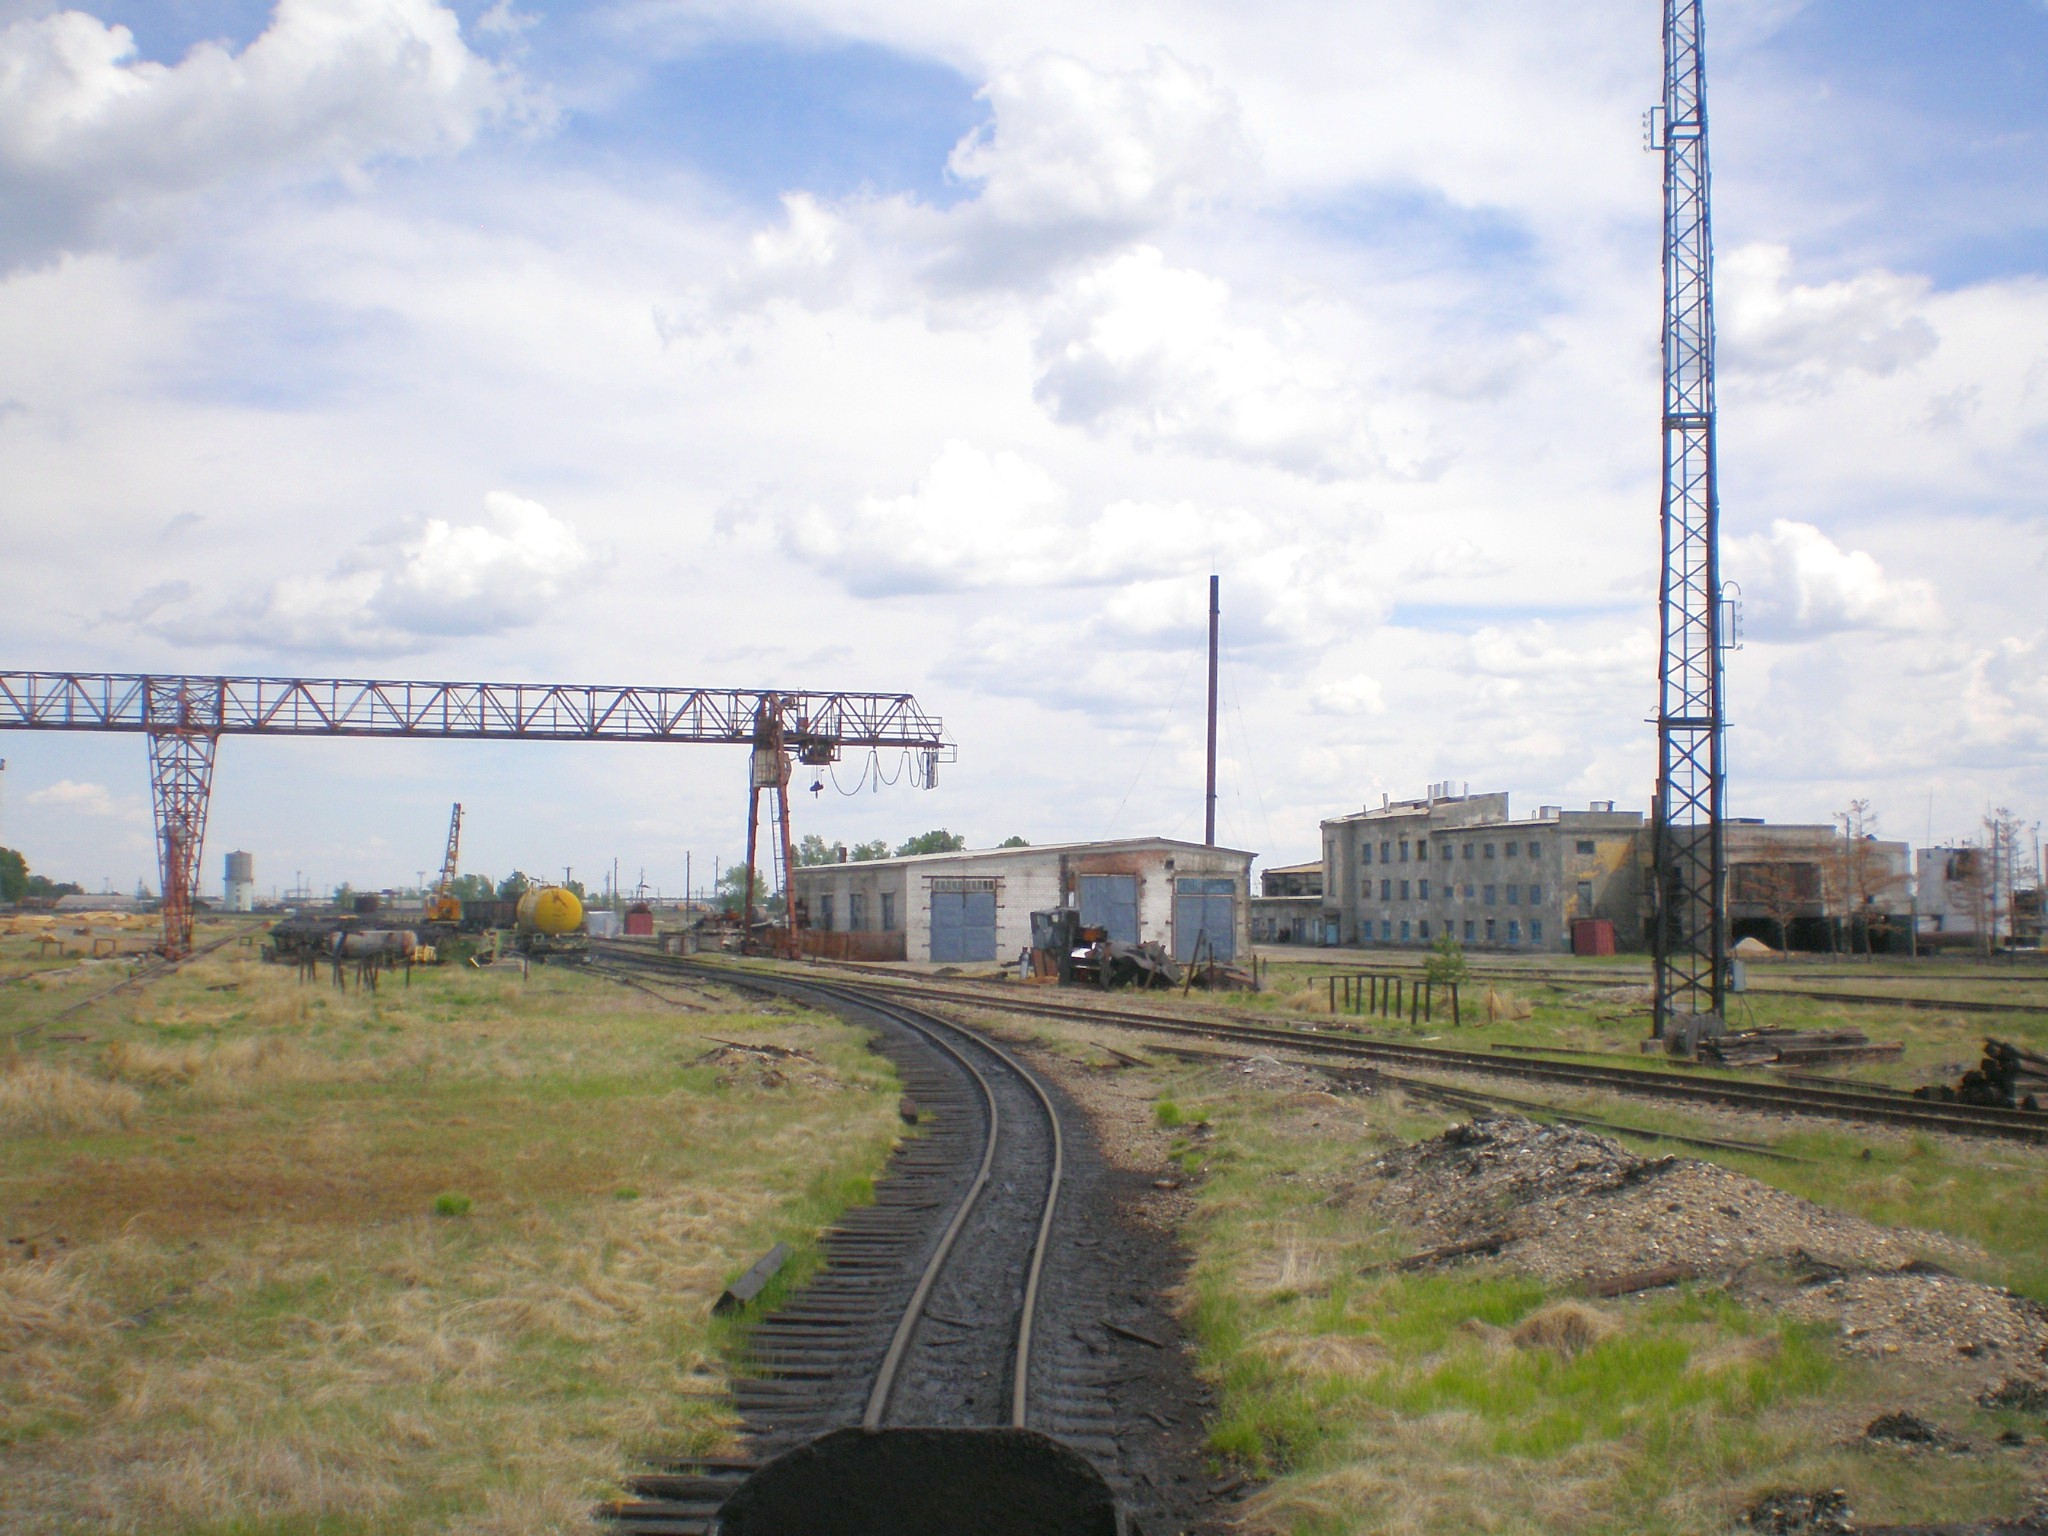 Узкоколейная железная дорога Ушумунского шпалопропиточного завода  — фотографии, сделанные в 2008 году (часть 2)